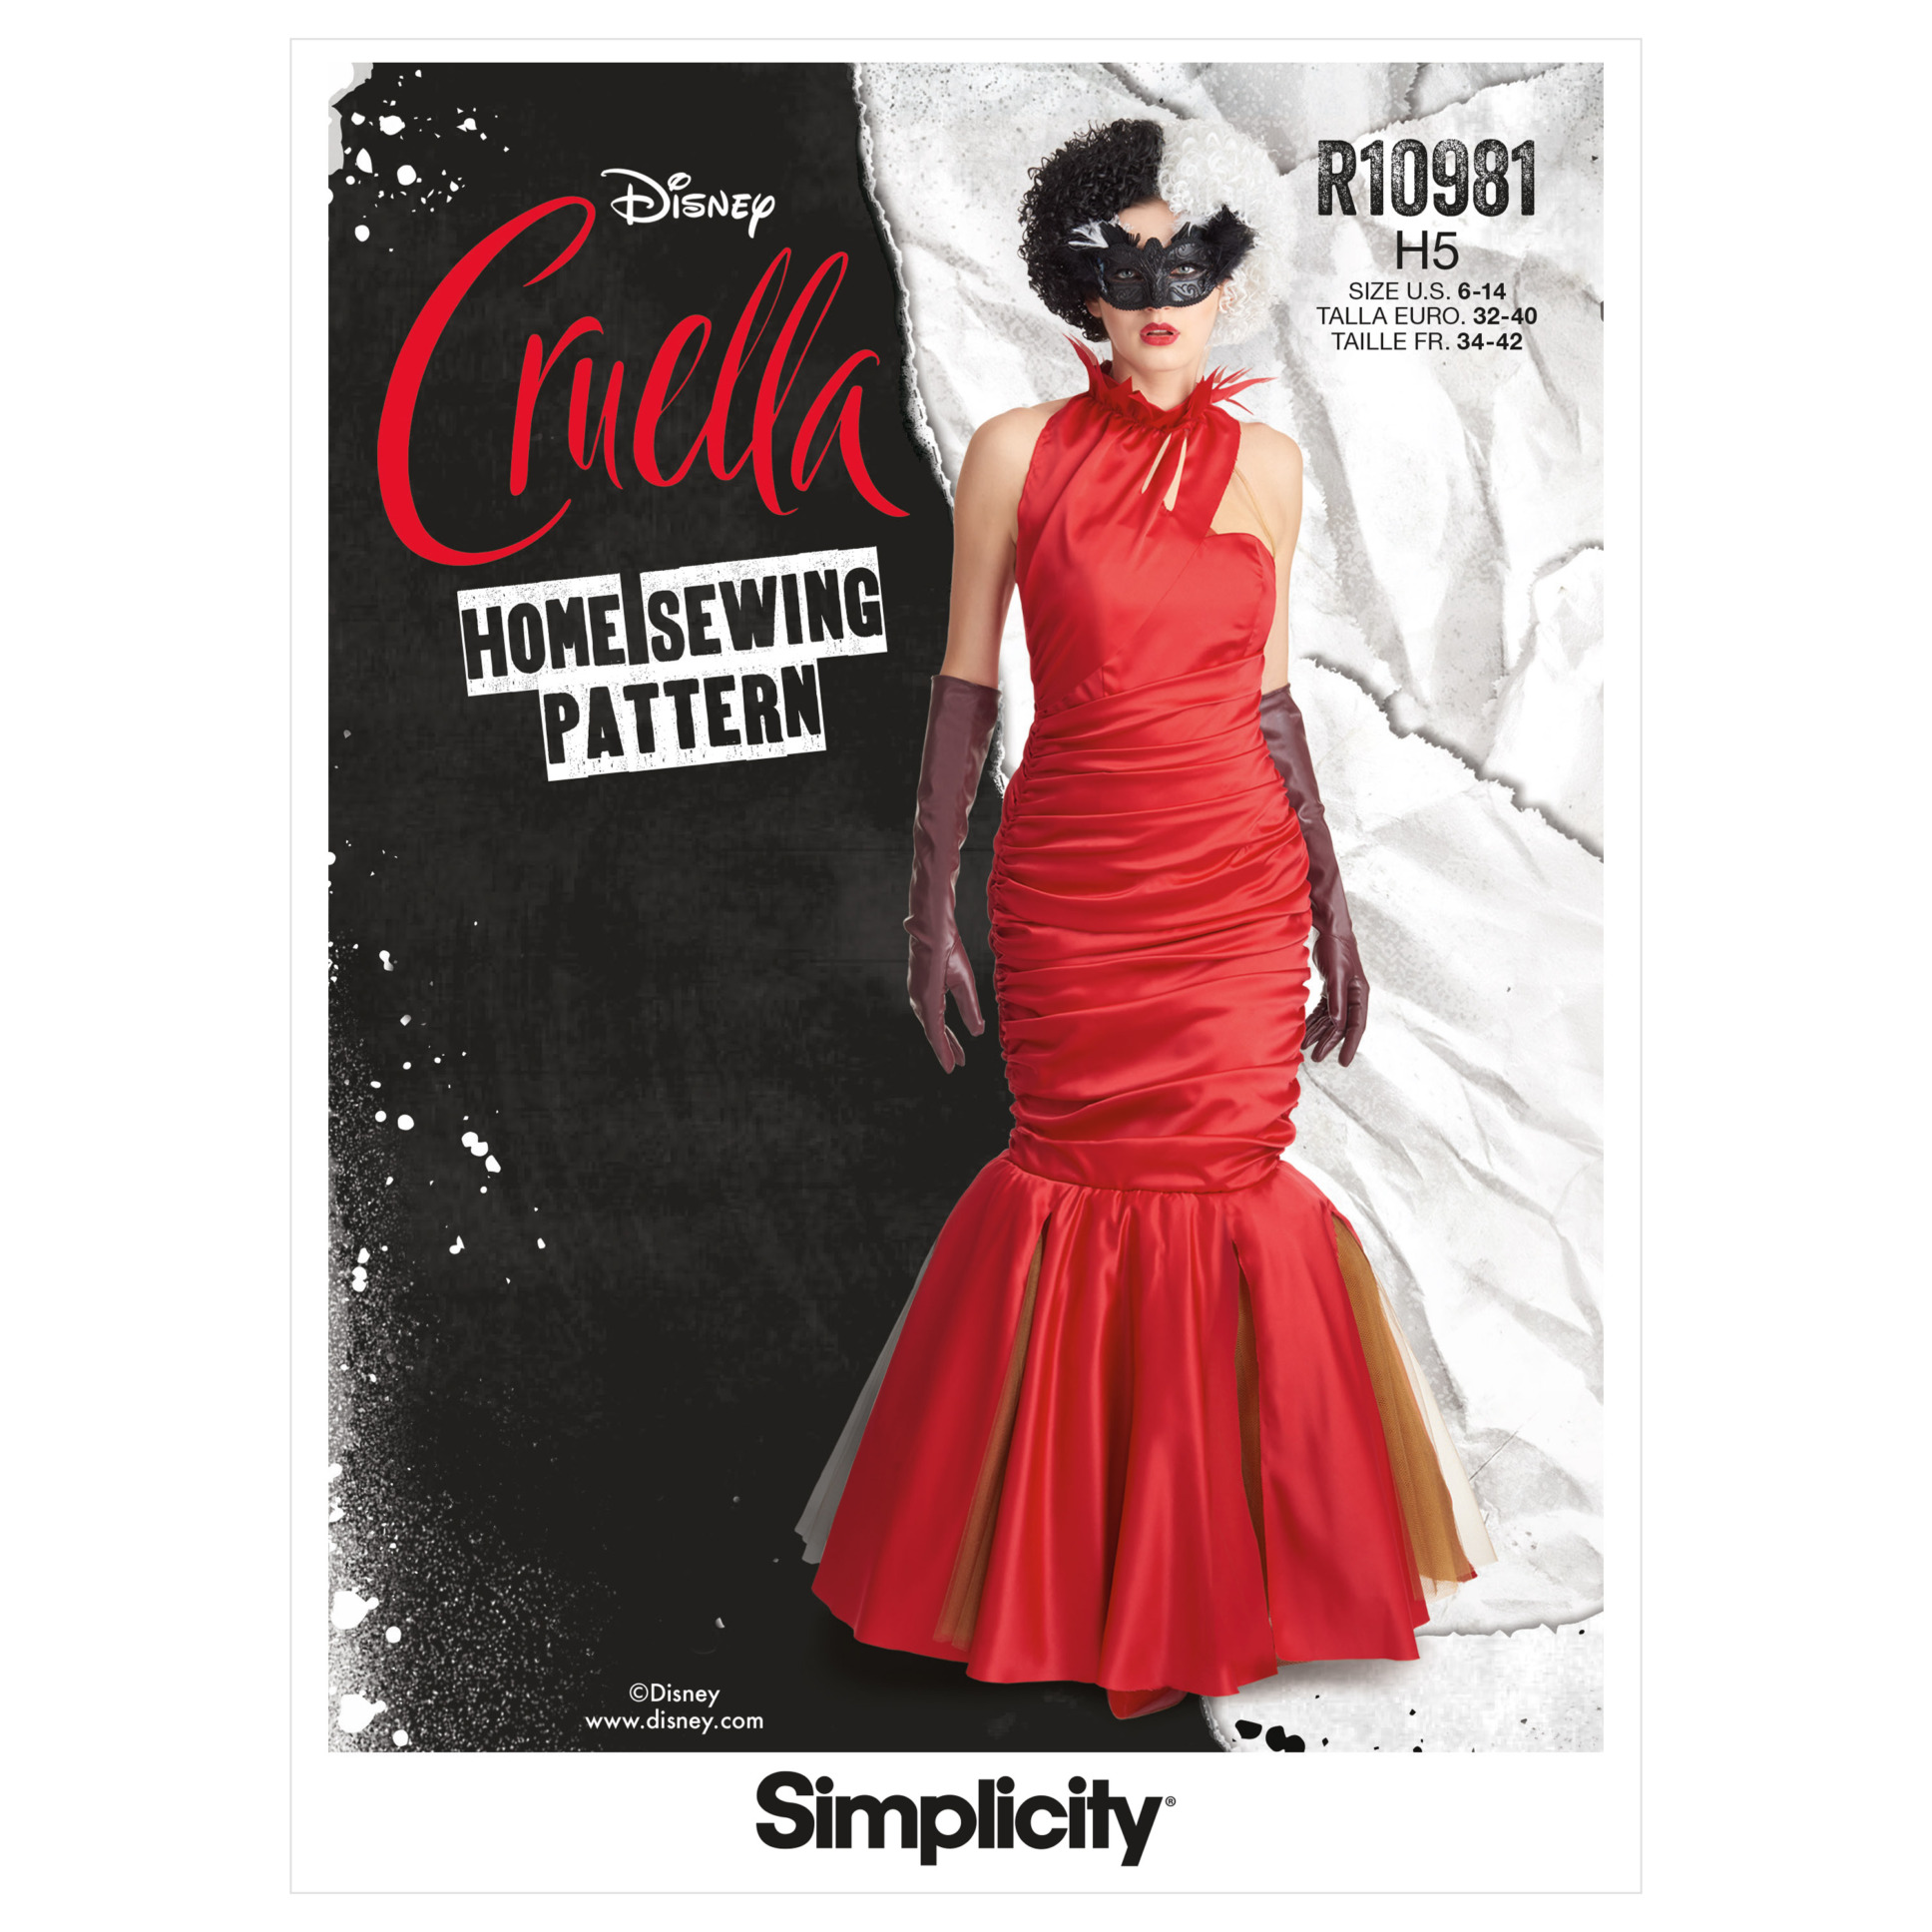 Cruella De Vil Red Dress Emma Stone Cosplay Costumes 2021 CosDaddy